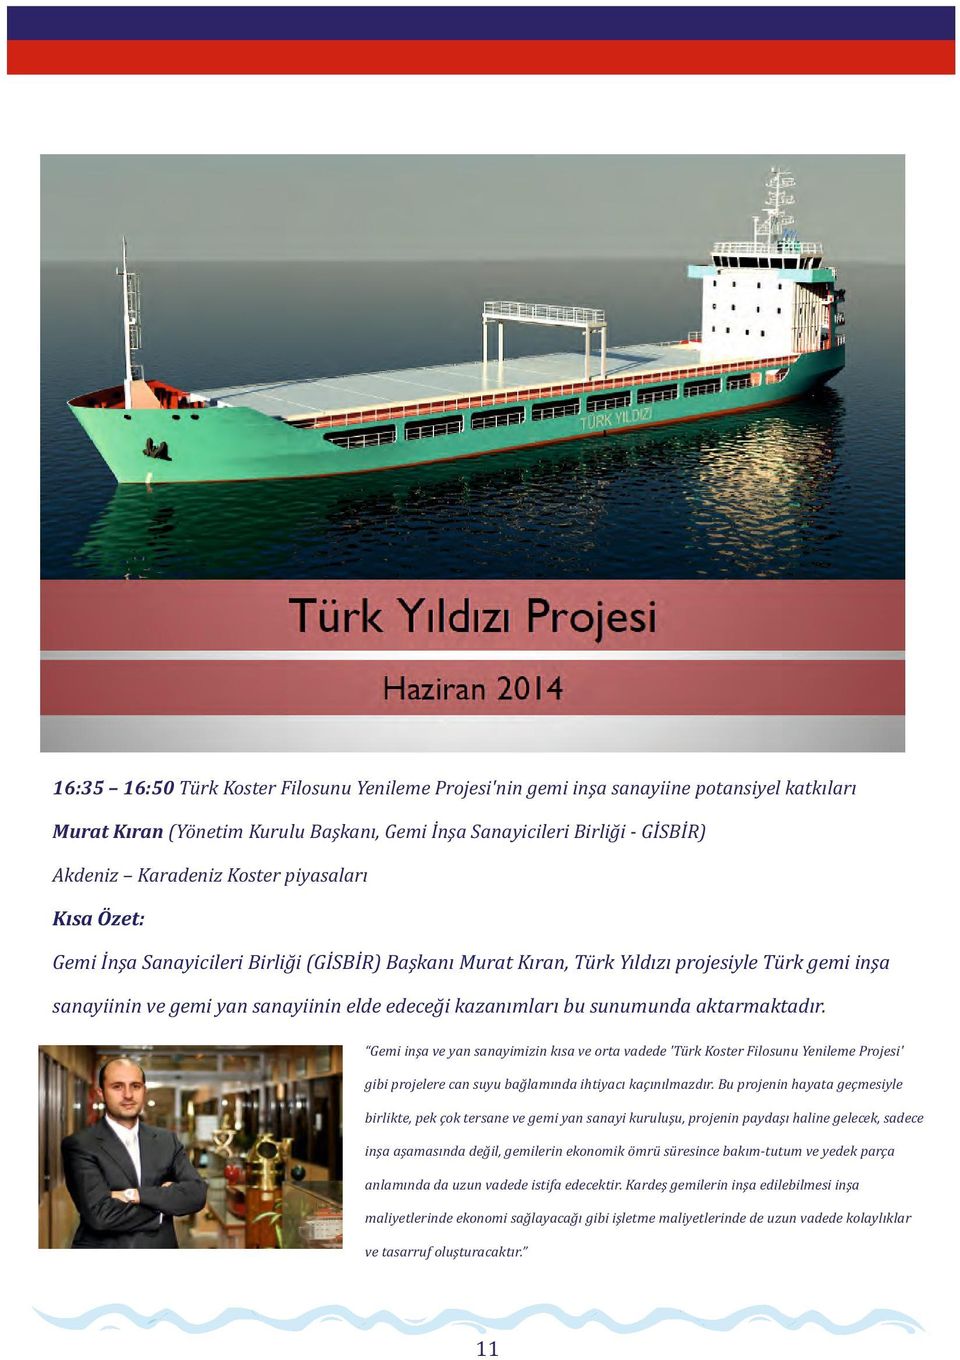 Gemi inşa ve yan sanayimizin kısa ve orta vadede 'Türk Koster Filosunu Yenileme Projesi' gibi projelere can suyu bağlamında ihtiyacı kaçınılmazdır.